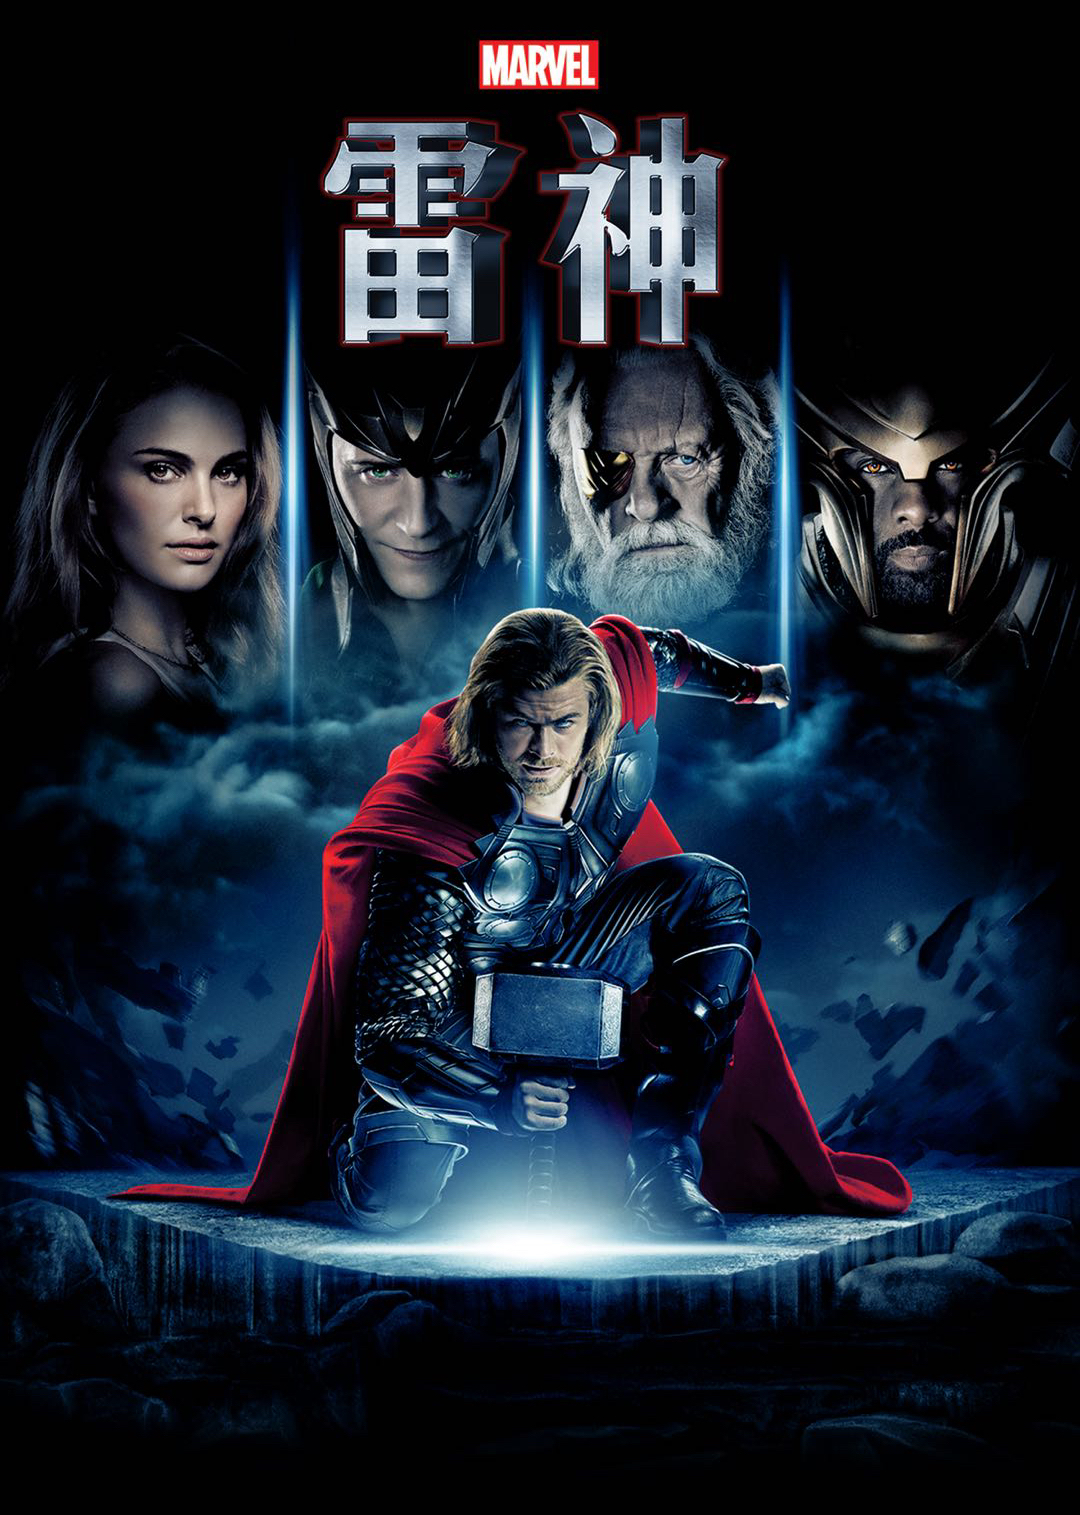 雷神2：黑暗世界(Thor: The Dark World)-电影-腾讯视频